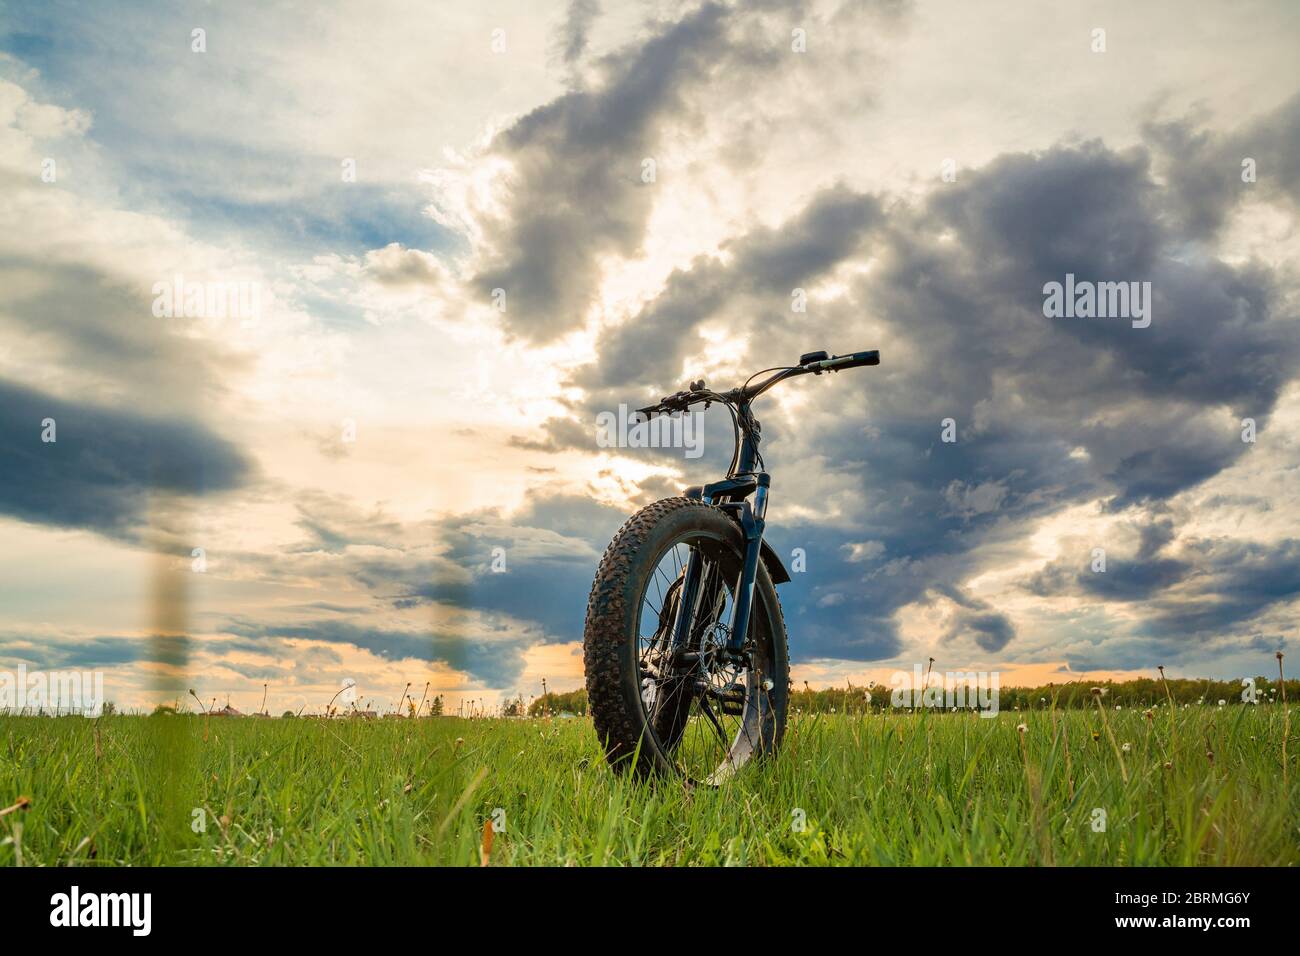 Una bicicletta con ruote spesse su un prato verde contro un cielo bellissimo. Moto da fatbike. Foto Stock